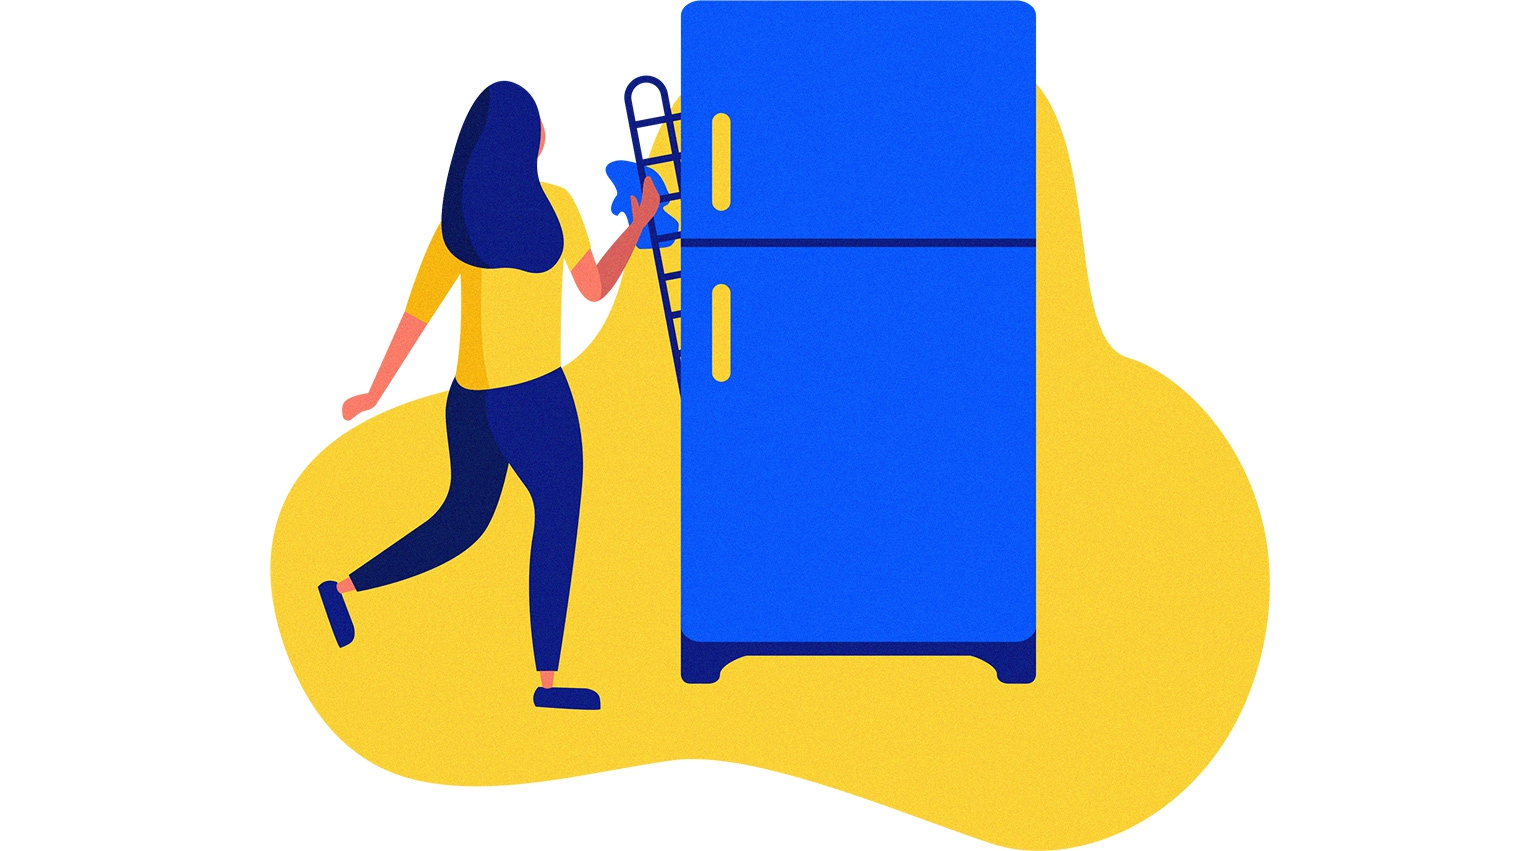 limpe regularmente as grelhas e tubos atrás do frigorífico para poupar energia